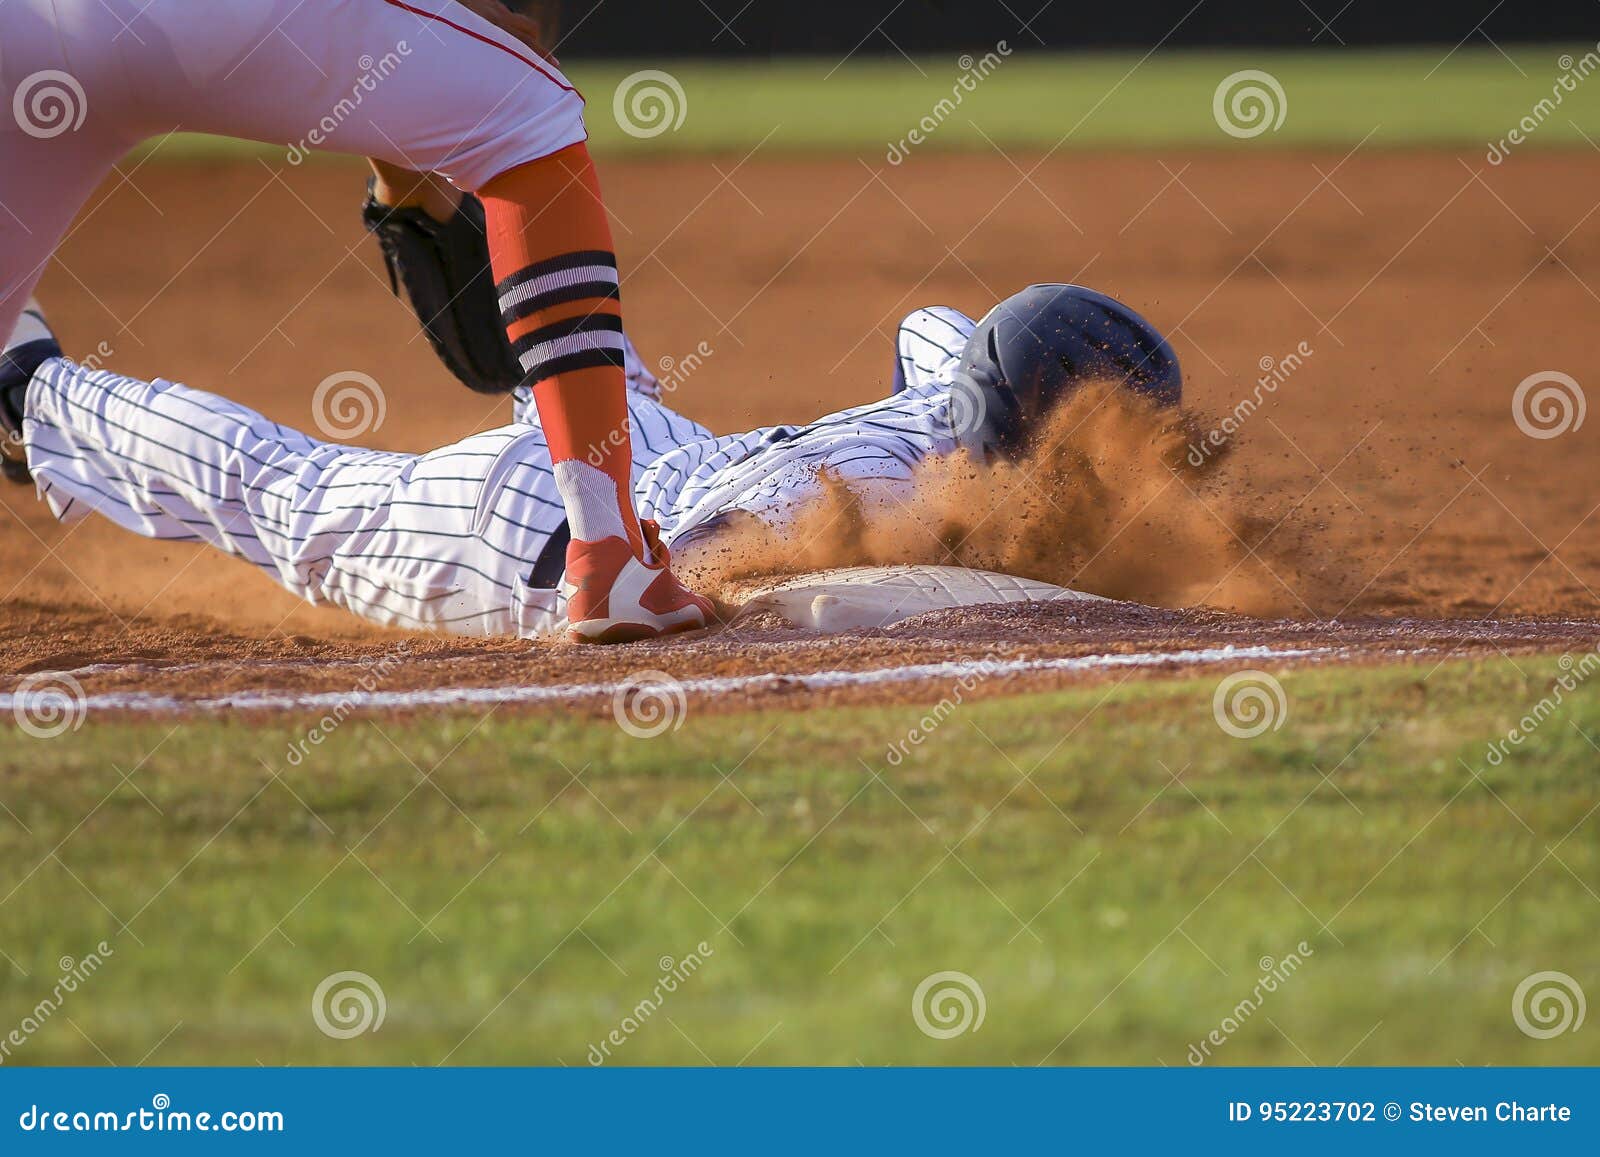 baseball player sliding first base